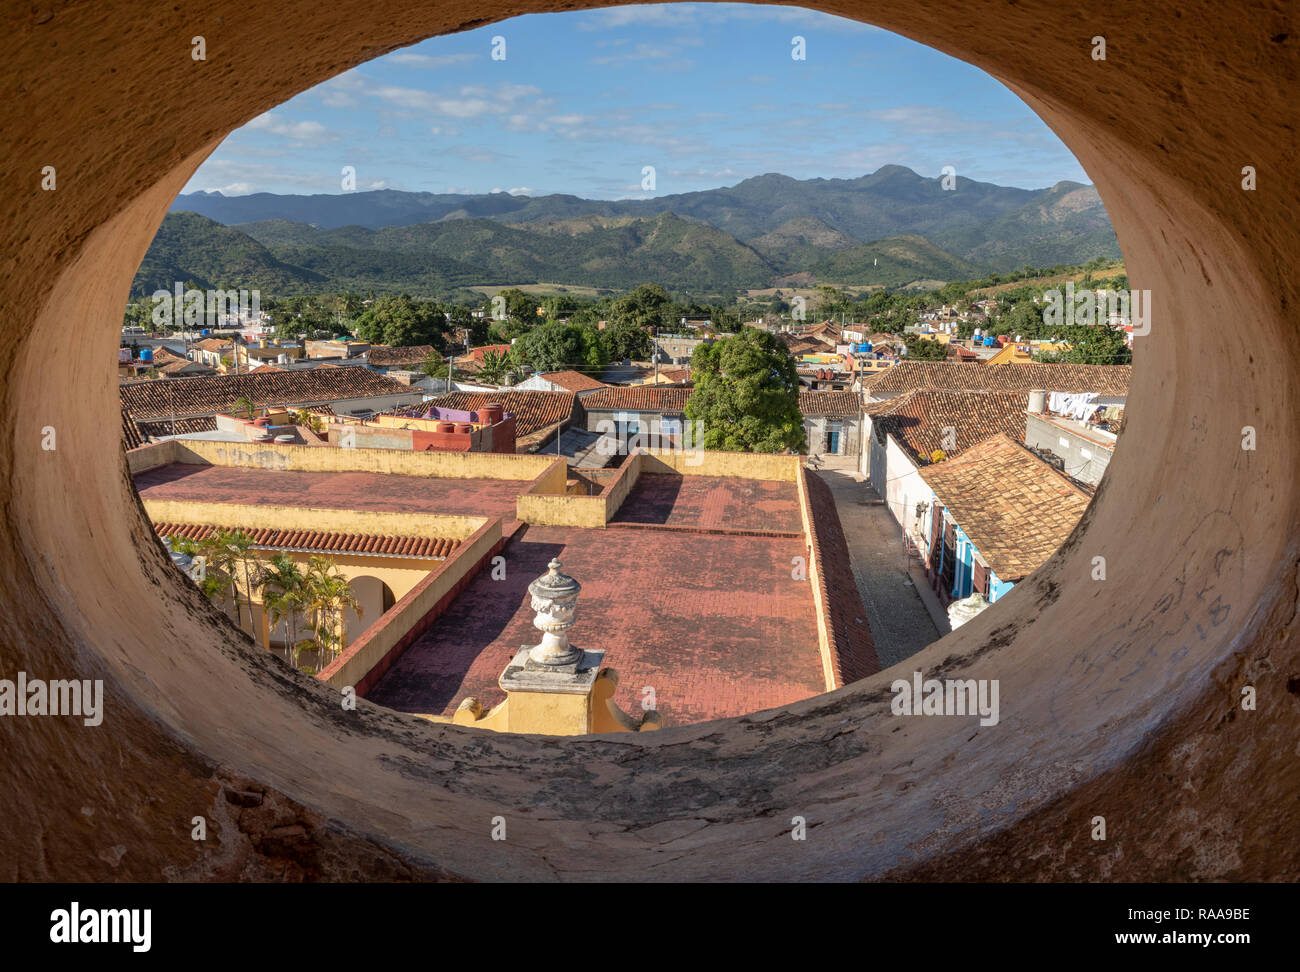 La ville et de la campagne vue de la Tour de San Francisco, Trinidad, Cuba Banque D'Images